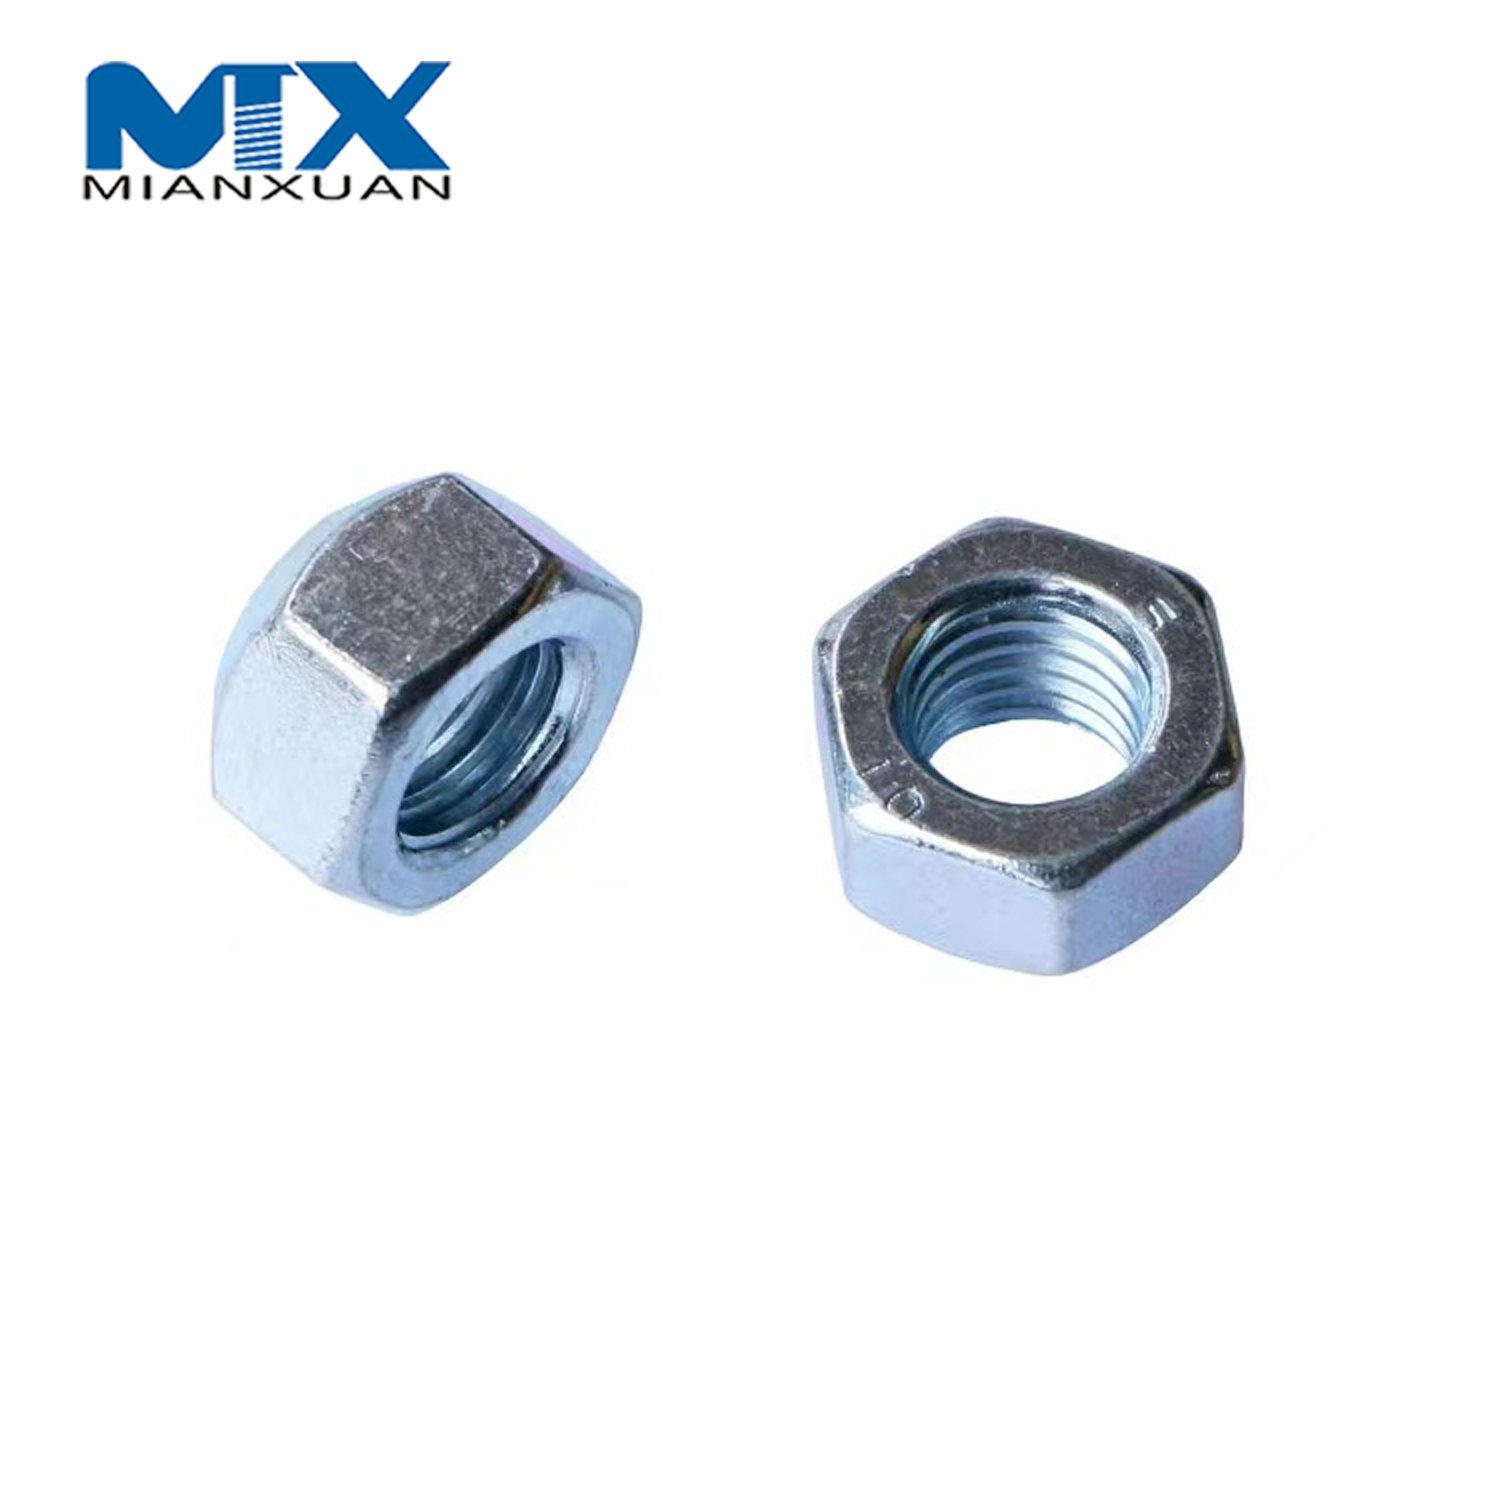 Carbon Steel DIN980V All-Metal Lock Nut Standard Manufacturer Black Zinc Plated